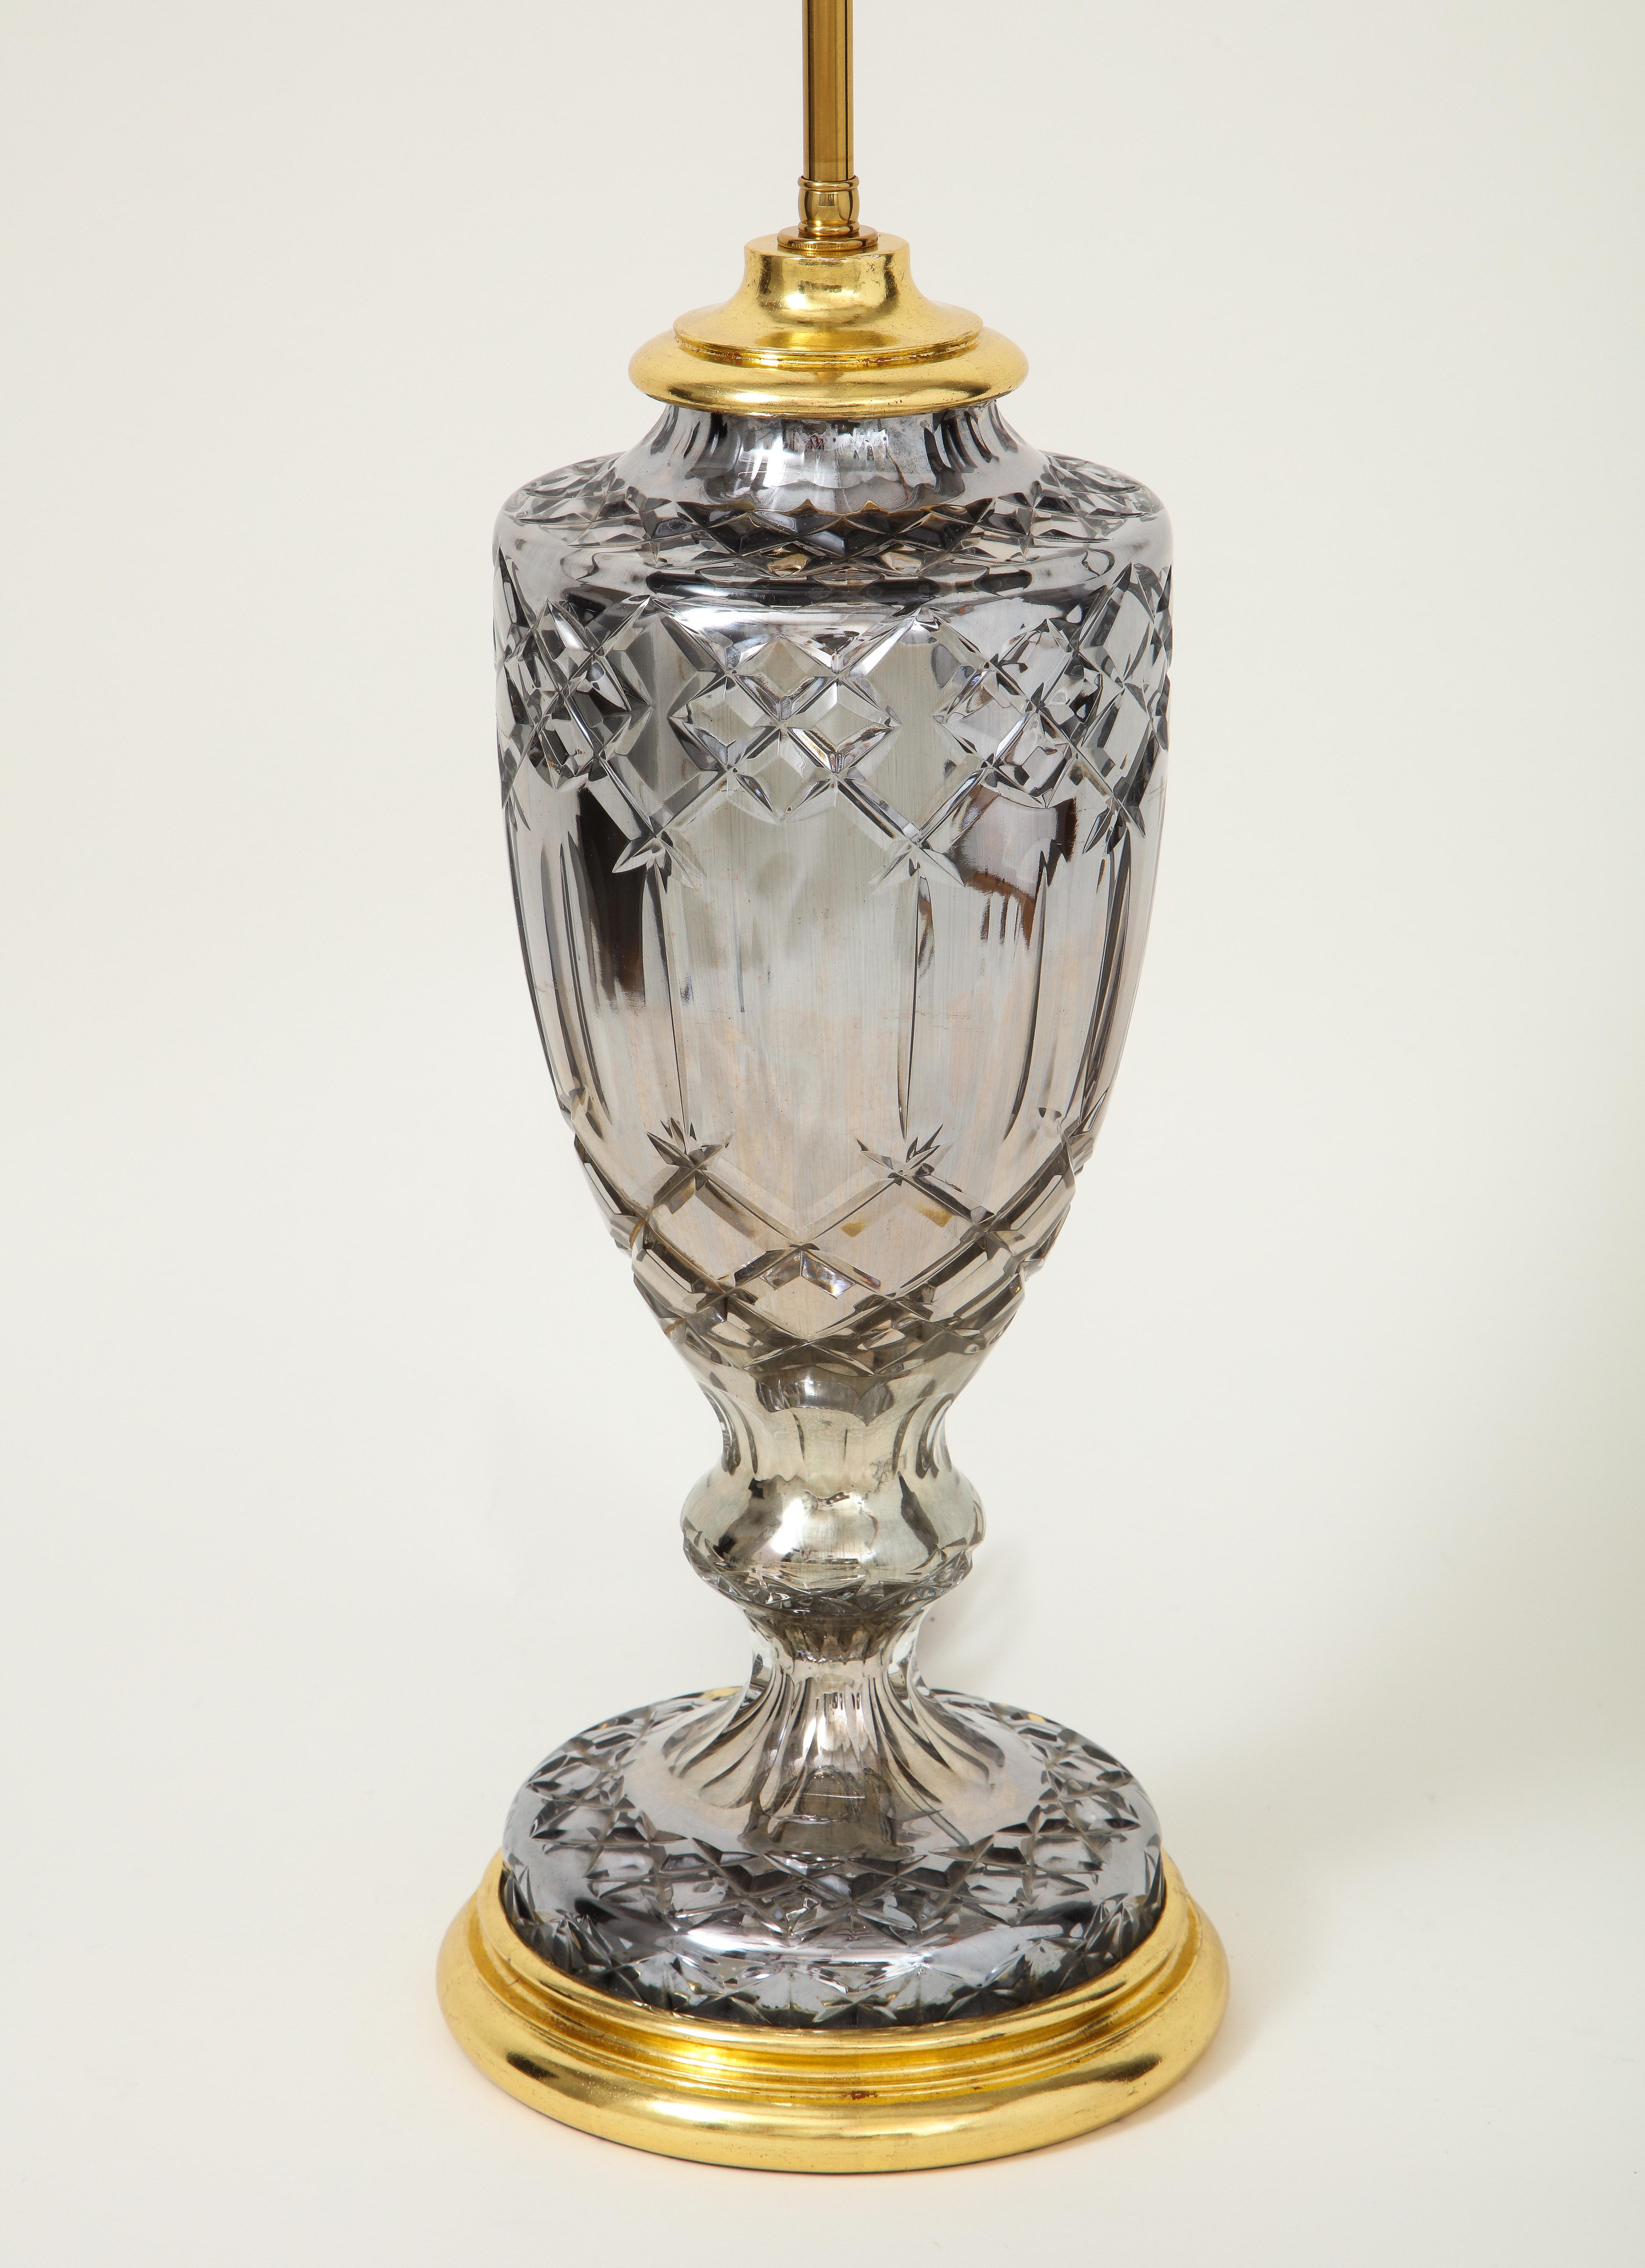 Glamouröse Kombination aus Grau und Gold. In Form einer Vase auf Ständer, angereichert mit geschnittenem Windelwerk. Auf einem gedrechselten, vergoldeten Sockel montiert und mit einer verstellbaren Stange und zwei Lampenfassungen versehen. Höhe bis